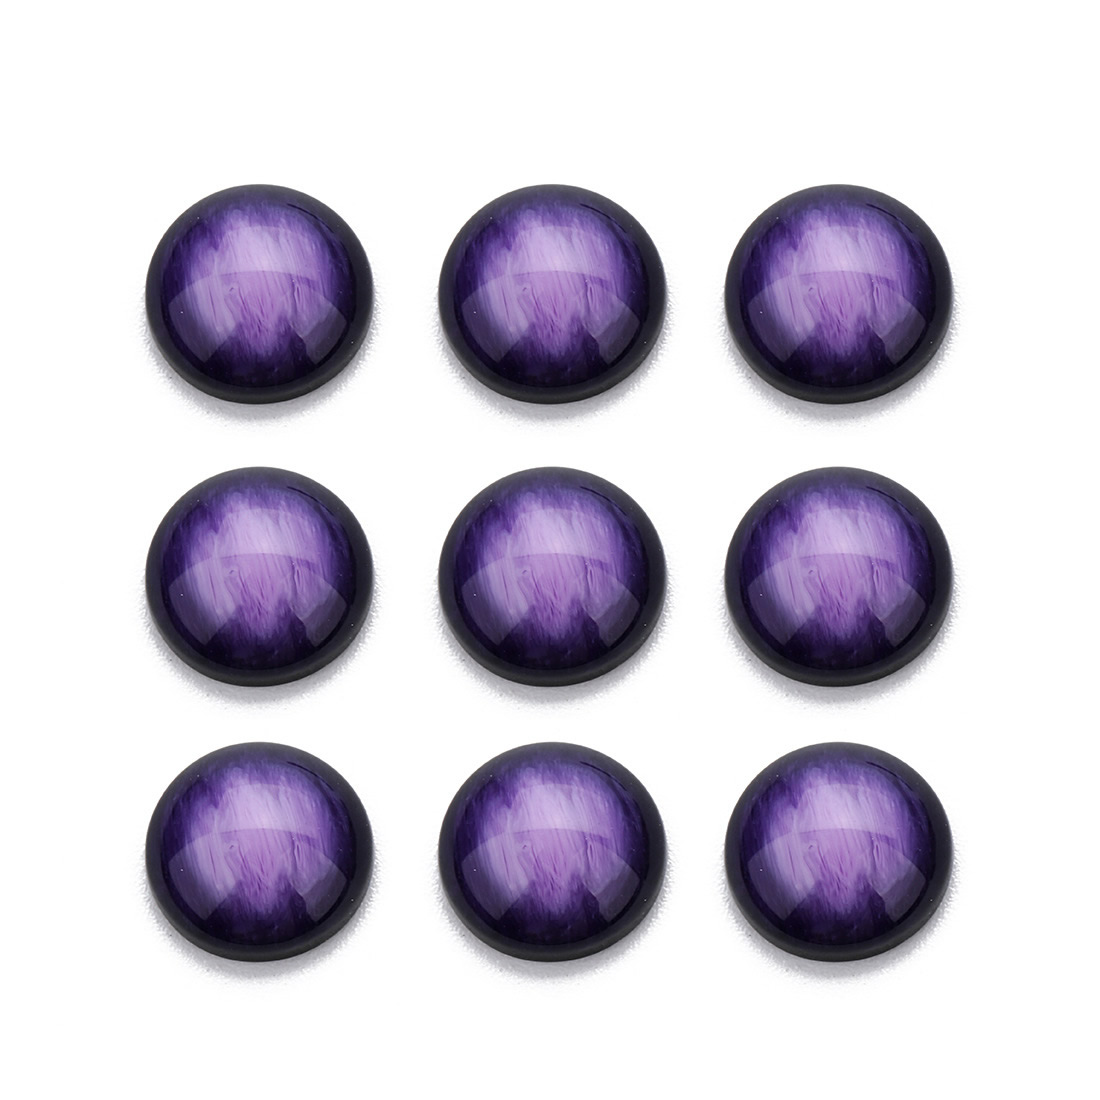 8 violet